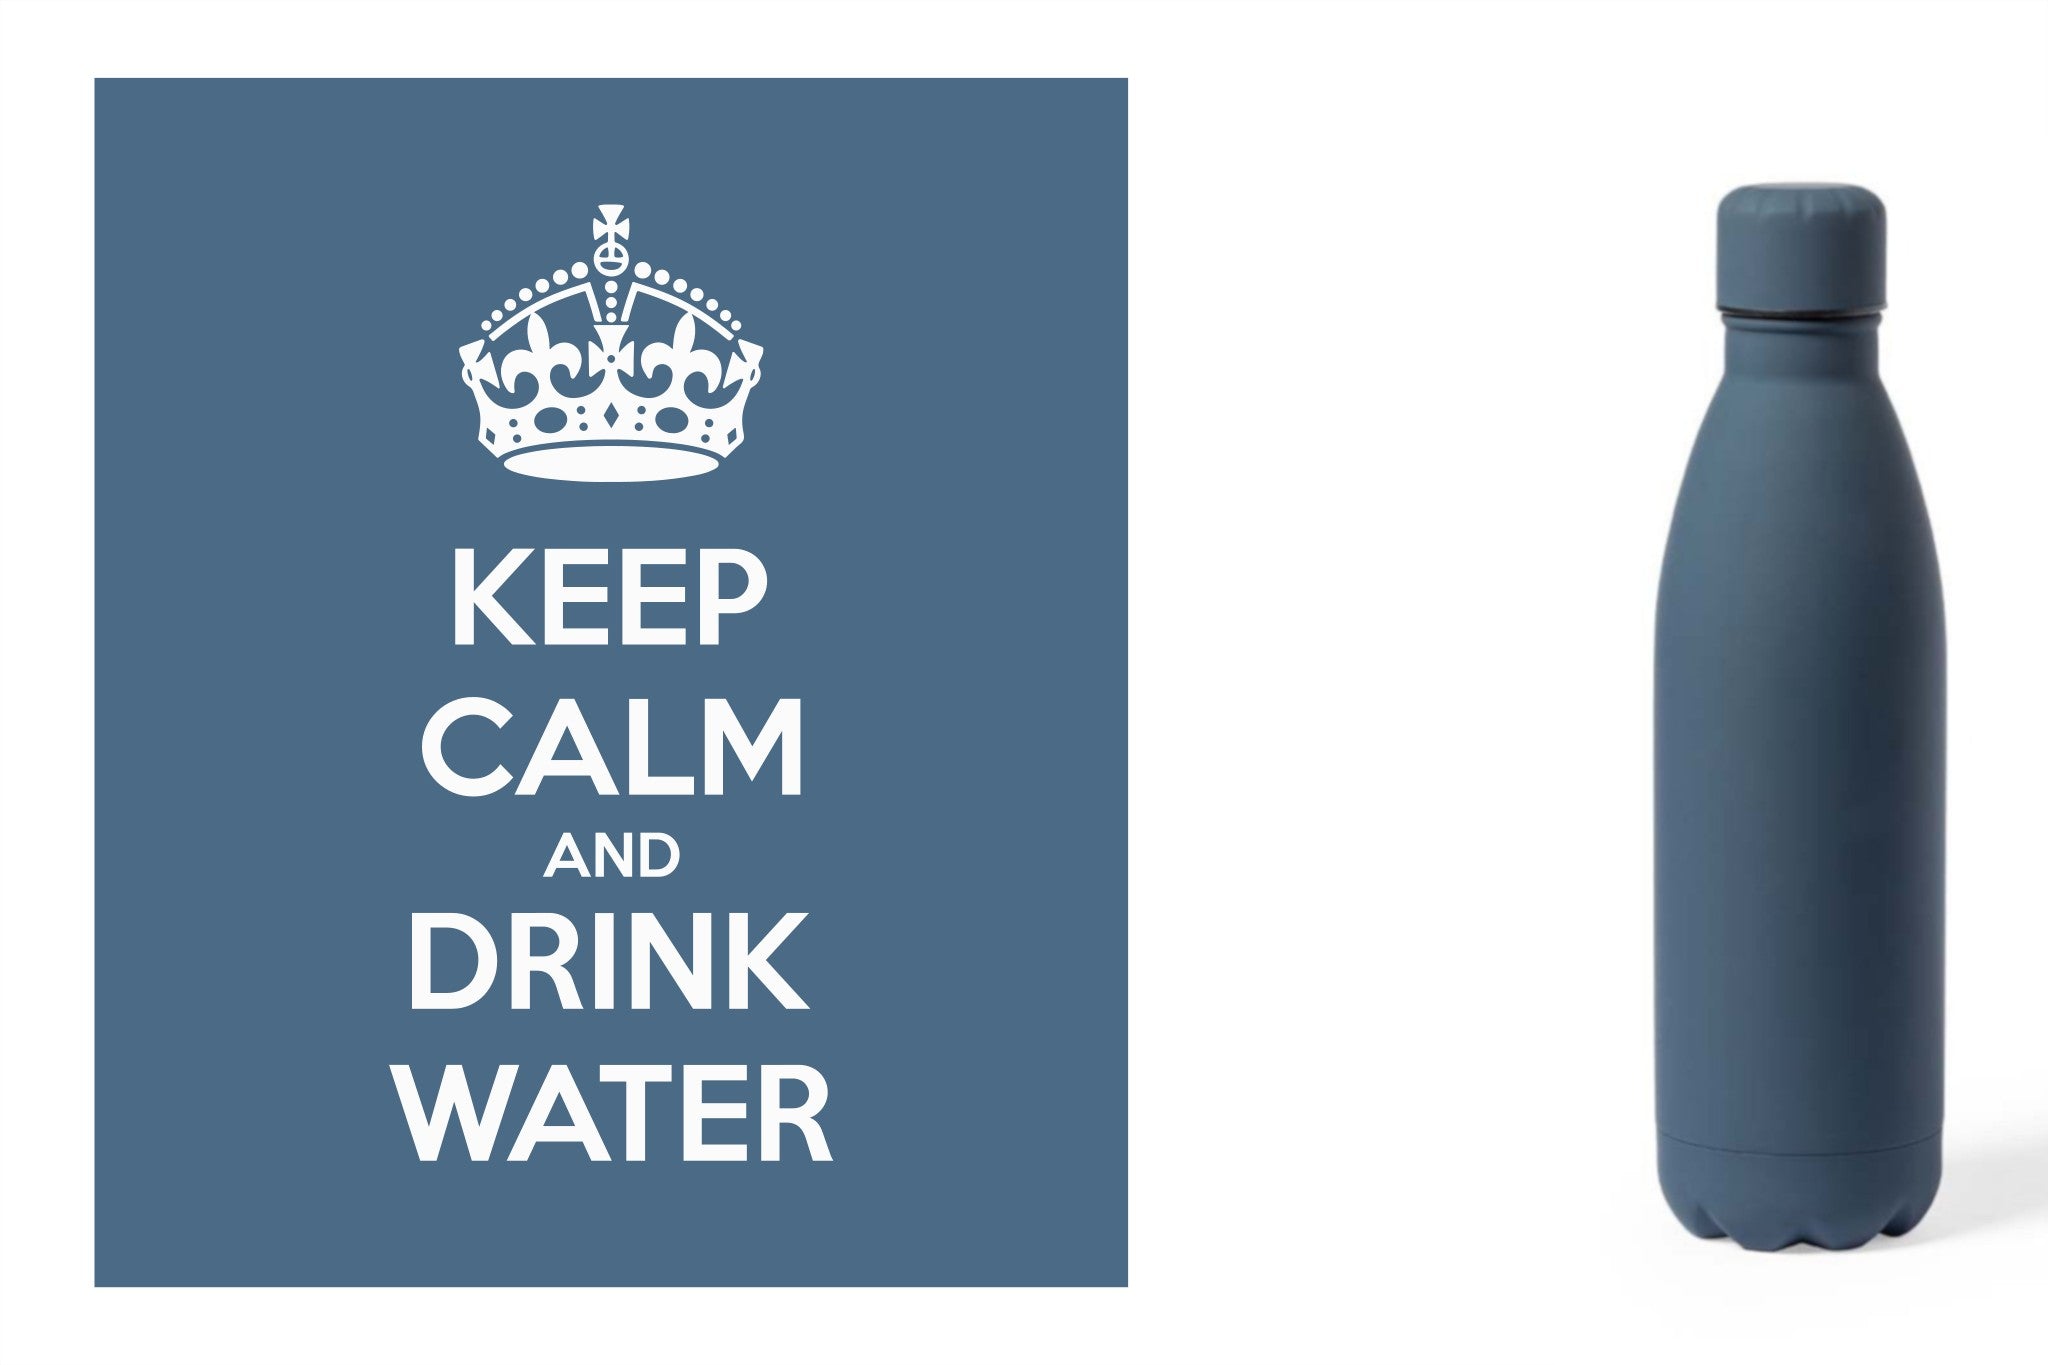 Metalen drinkfles, onbreekbare waterfles, aluminium drinkfles, hydratatiefles, fles van RVS, roesvrijstalen watercontainer met water quote 'Keep calm and drink water' kleur blauw.